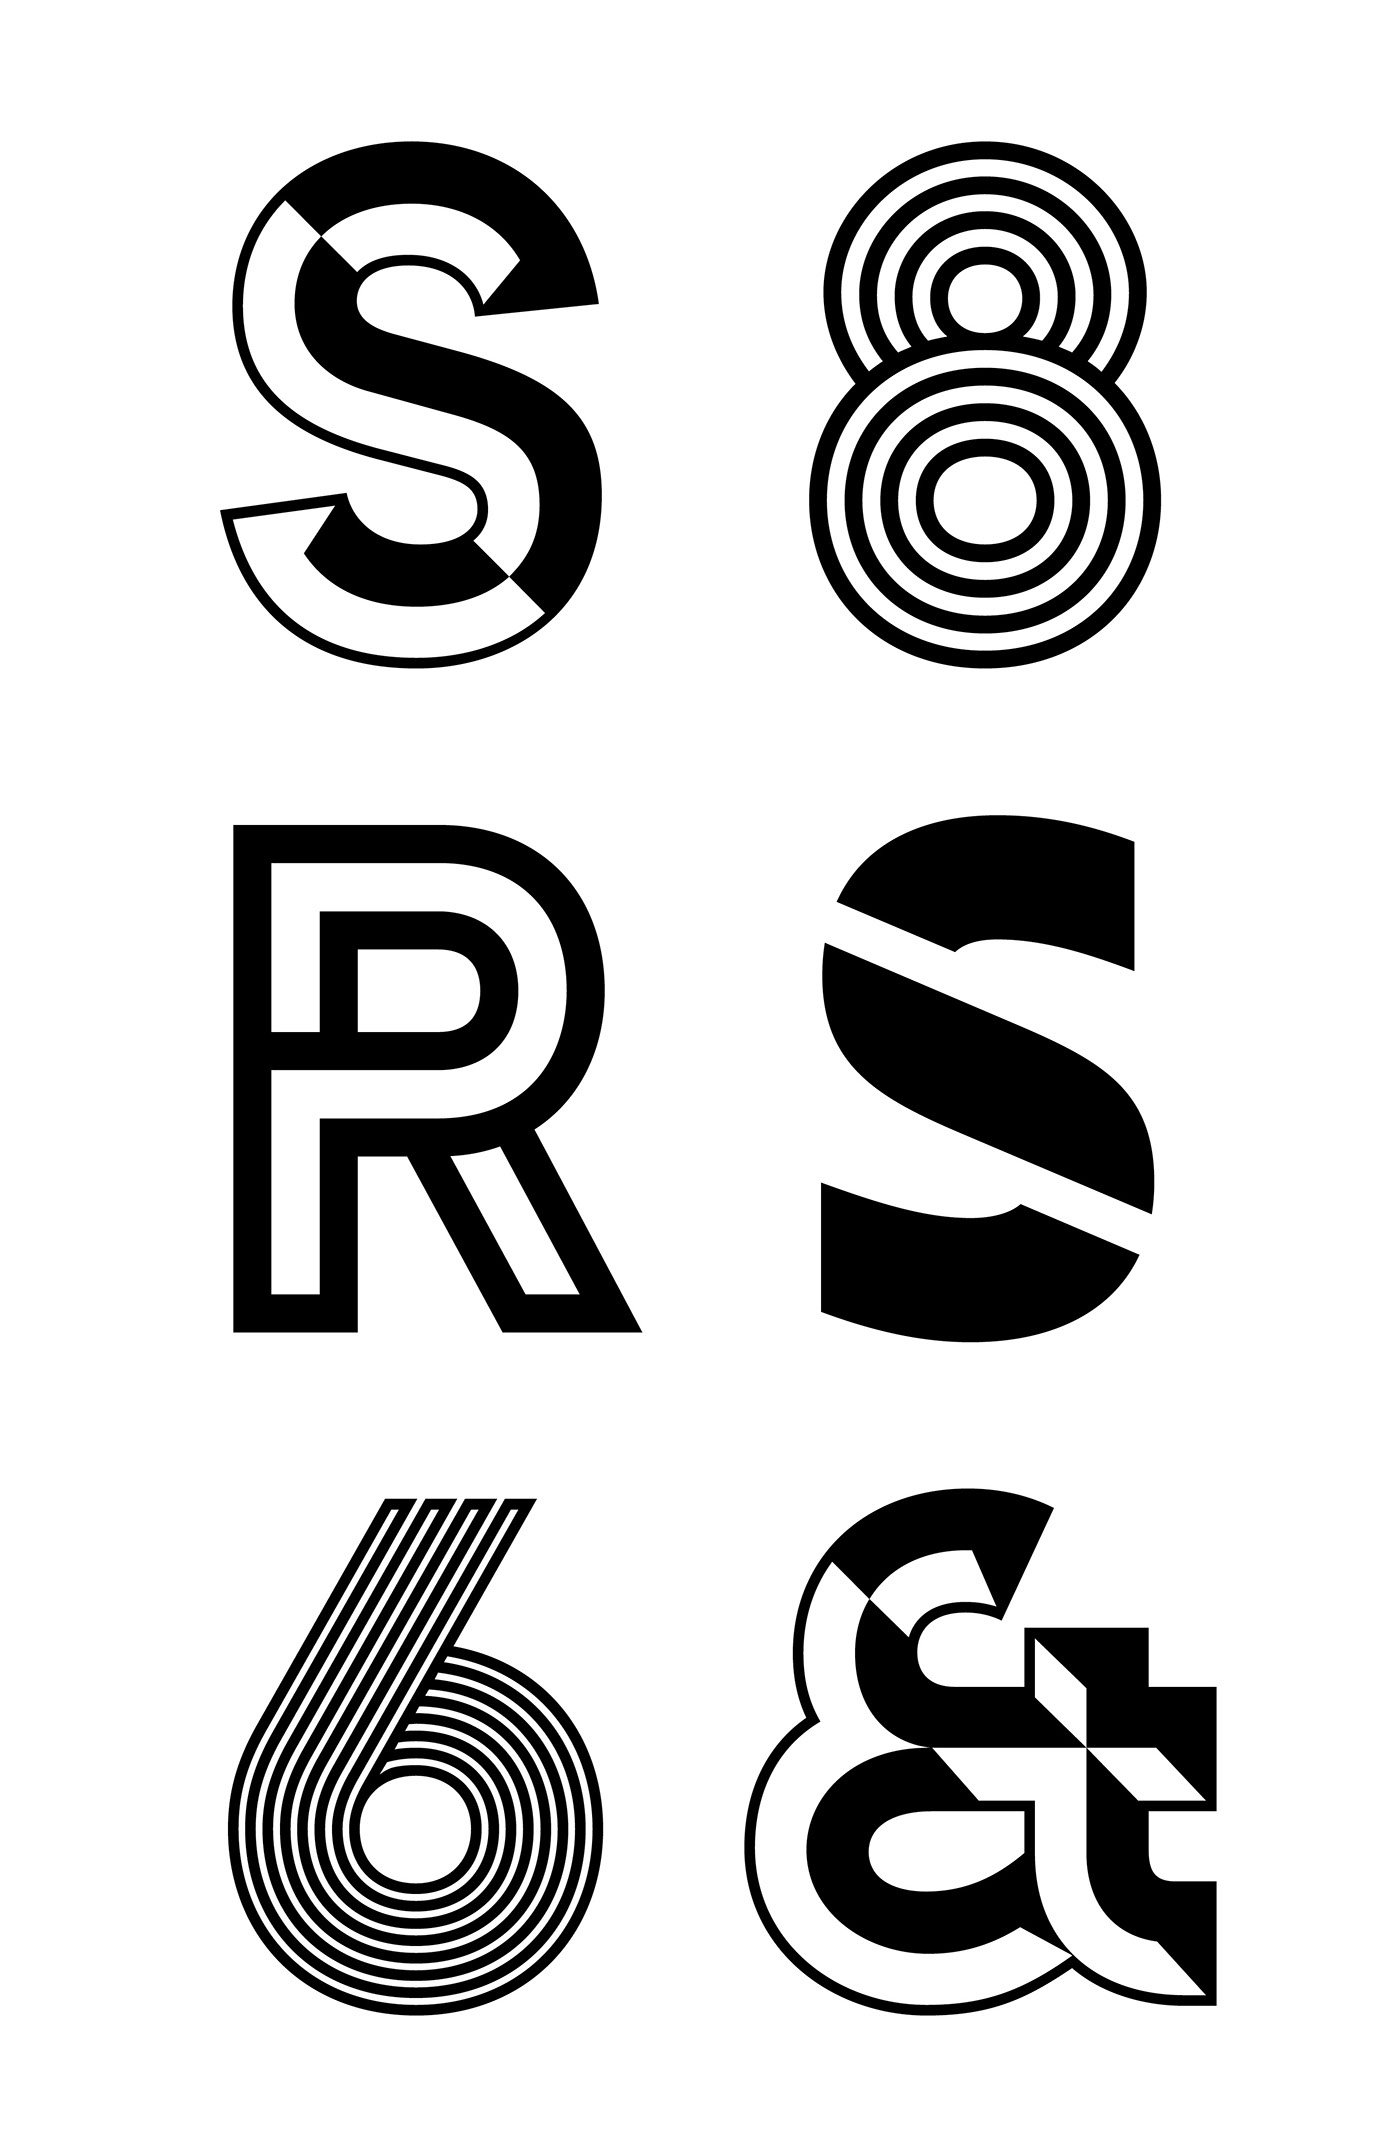 Typeface font Monolinear devinyl vinyl acier stencil cool Fun poster capitals sans sans-serif prism lined